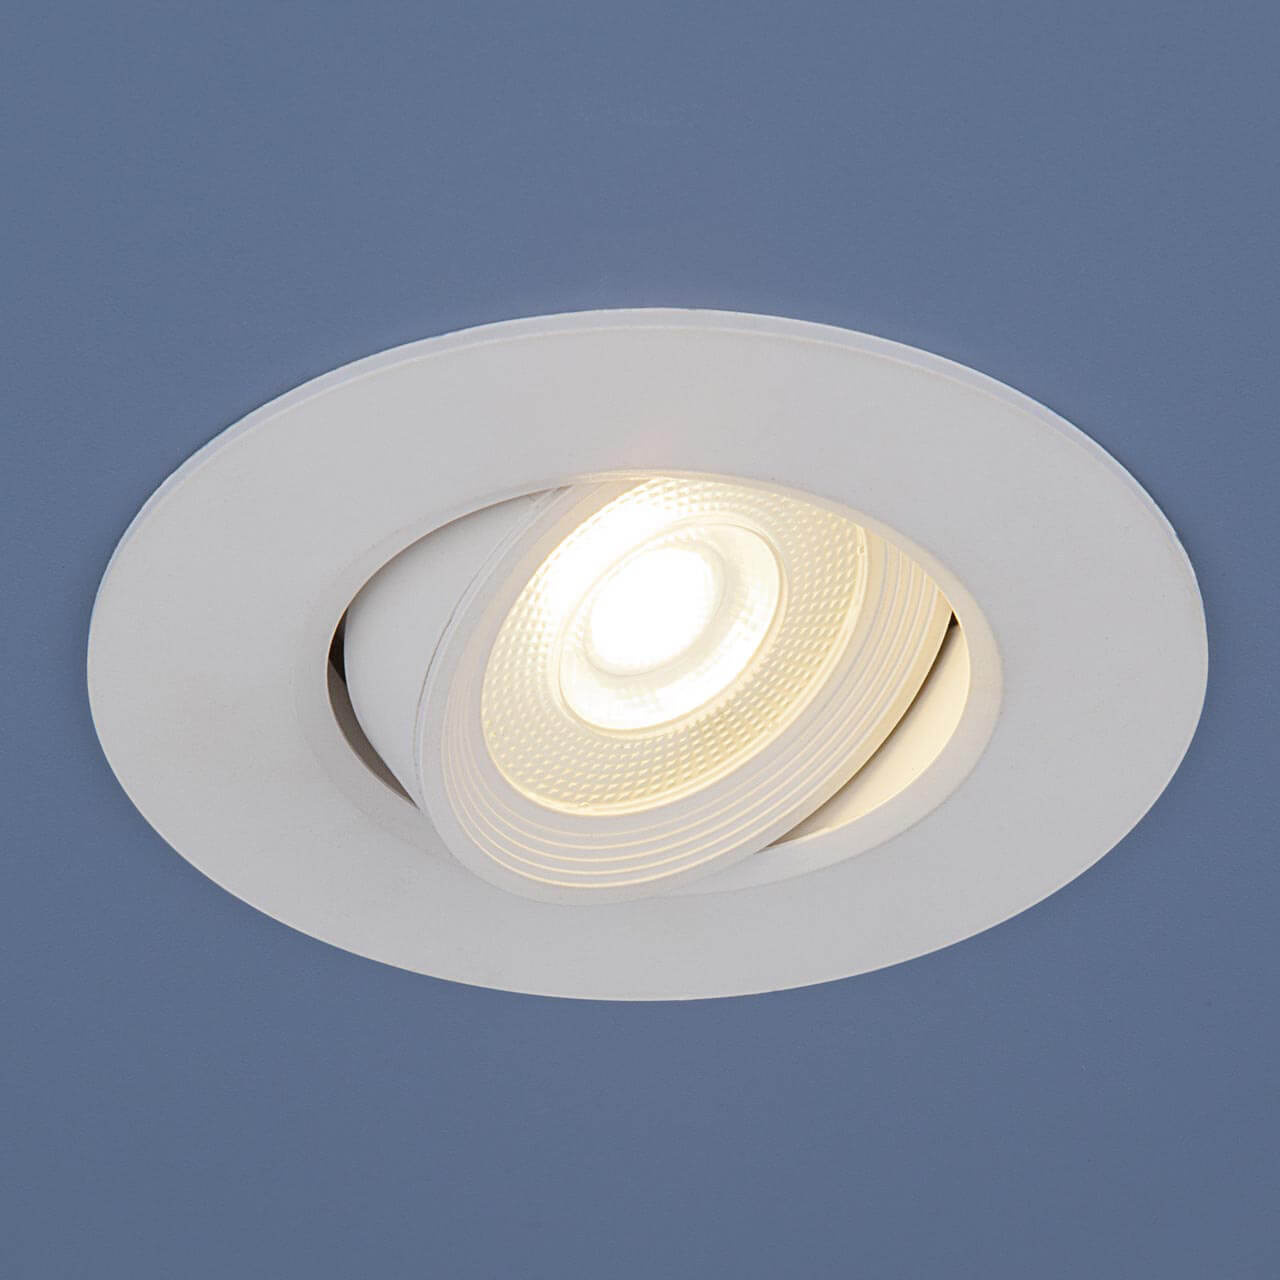 Встраиваемый светодиодный светильник Elektrostandard 9906 LED 6W WH белый 4690389116117